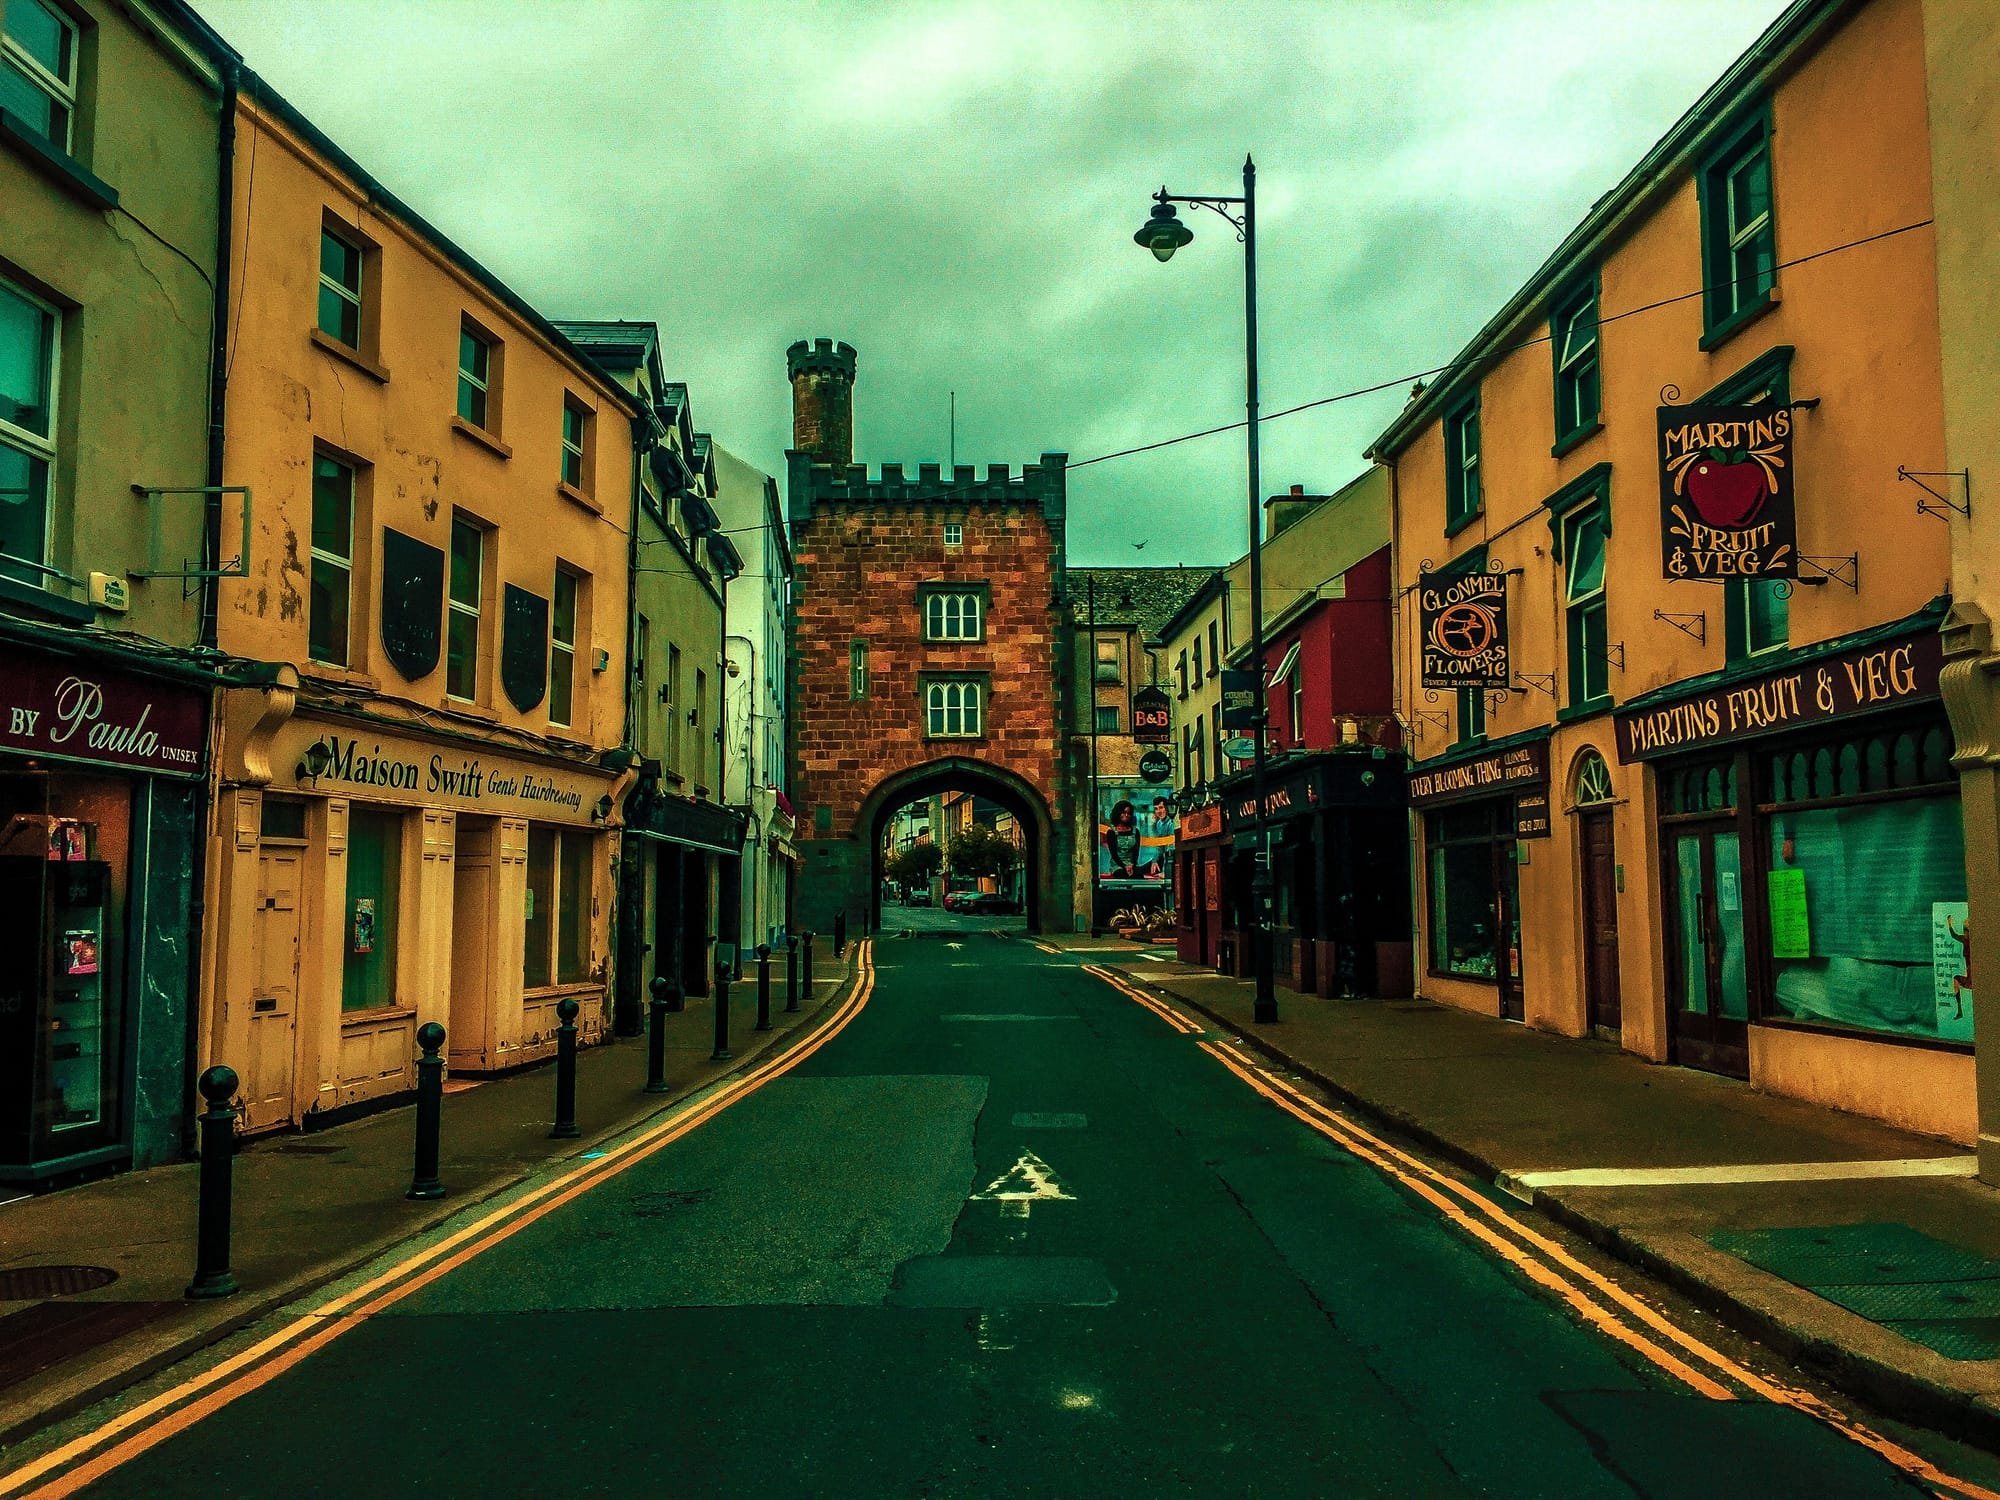 Irishtown looking towards the West Gate in Clonmel